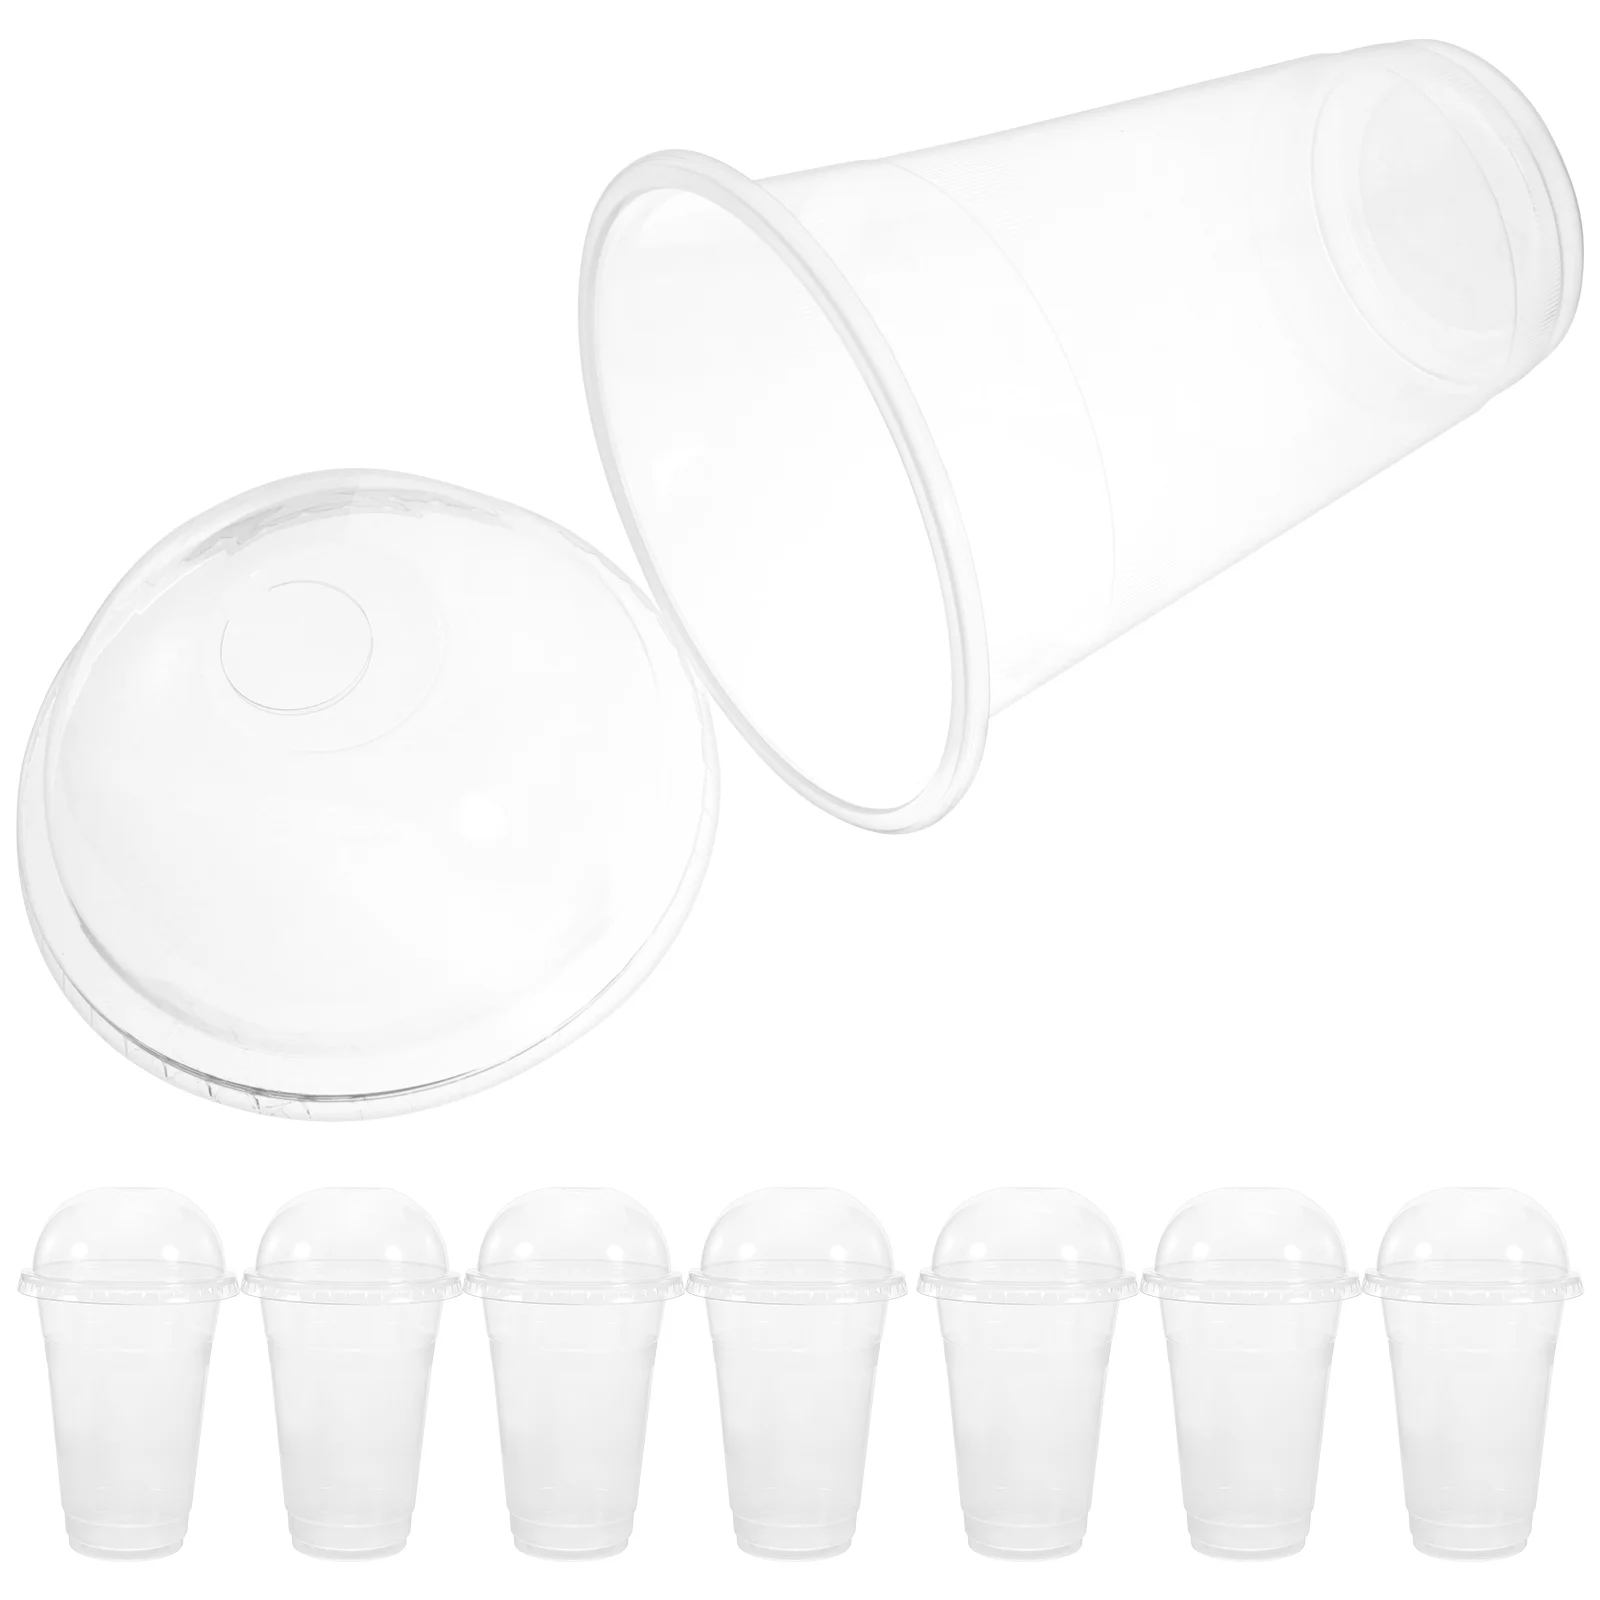 

50 Sets of Transparent Juice Cups Disposable Juice Cups Plastic Juice Cups Portable Clear Cups with Lids